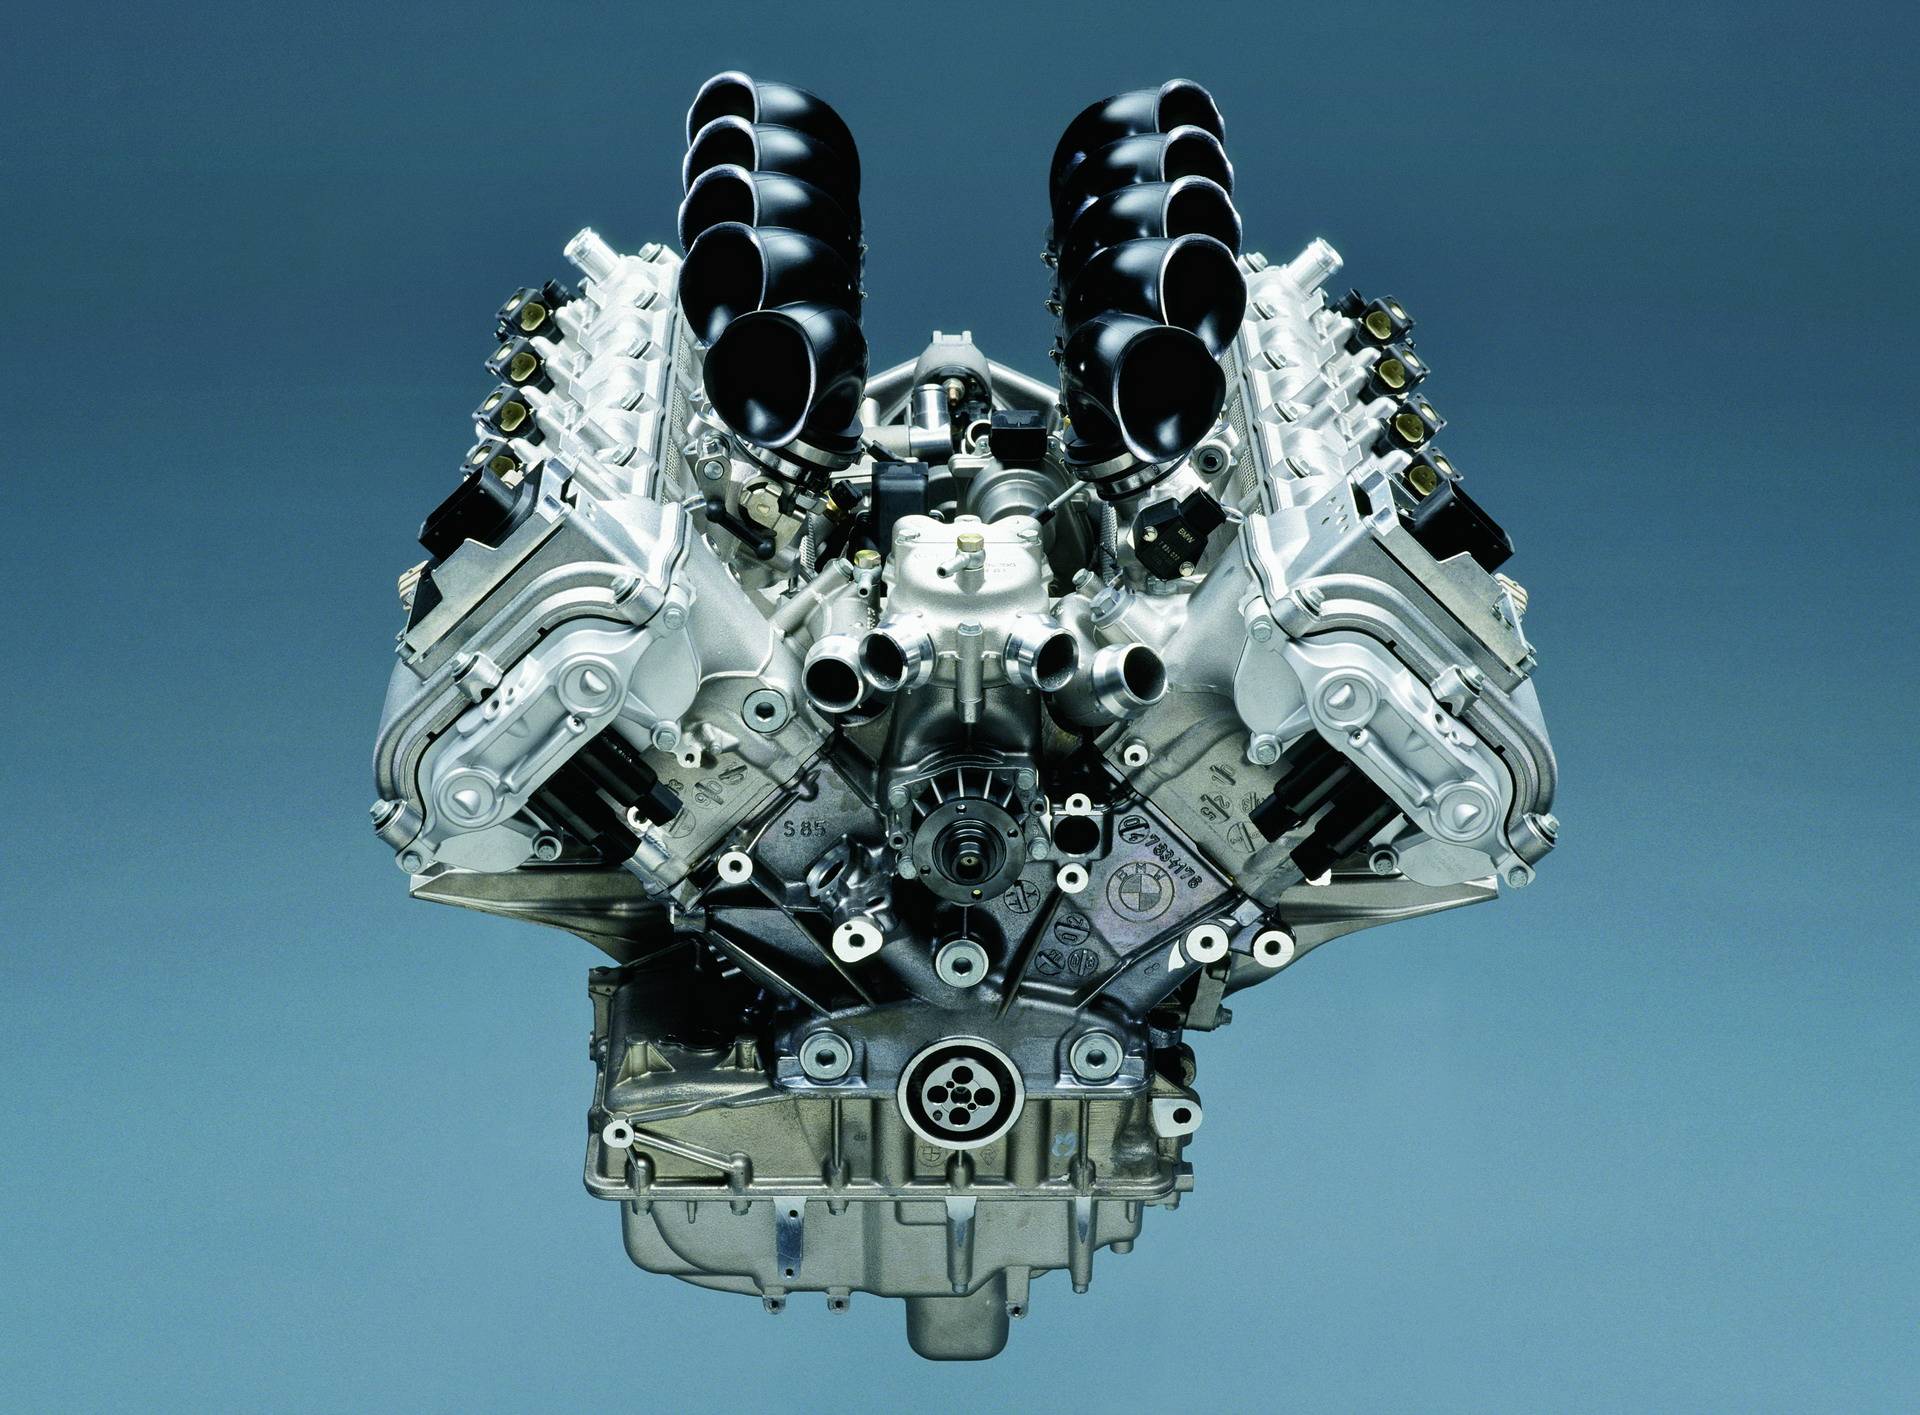 Двигатель BMW S85 V10 - легендарный мотор из Баварии 7